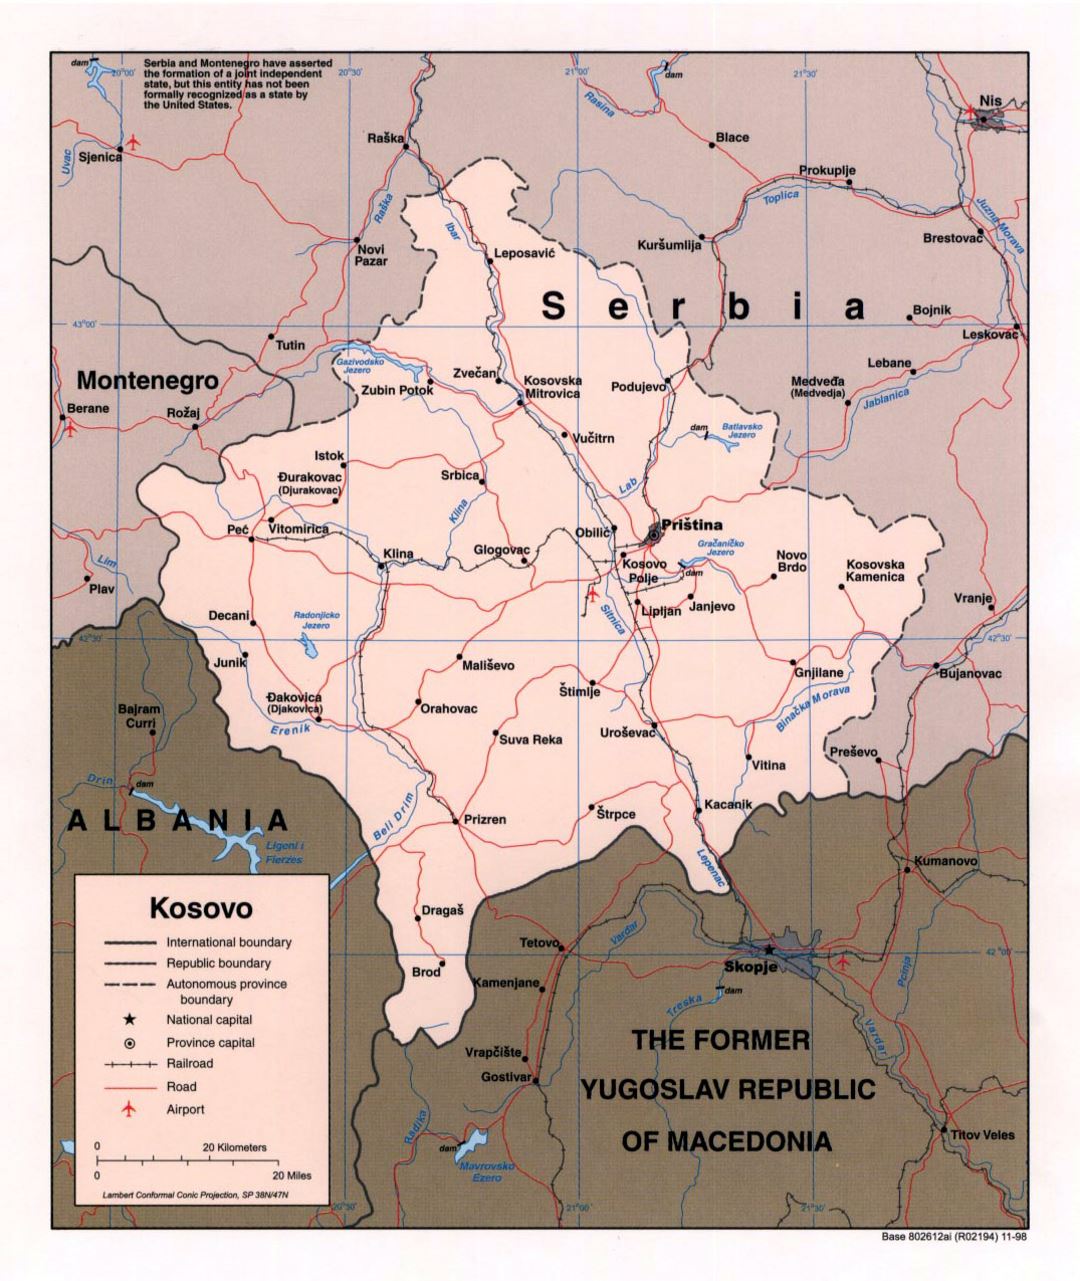 Детальная политическая карта Косово с дорогами, железными дорогами, крупными городами и аэропортами - 1998